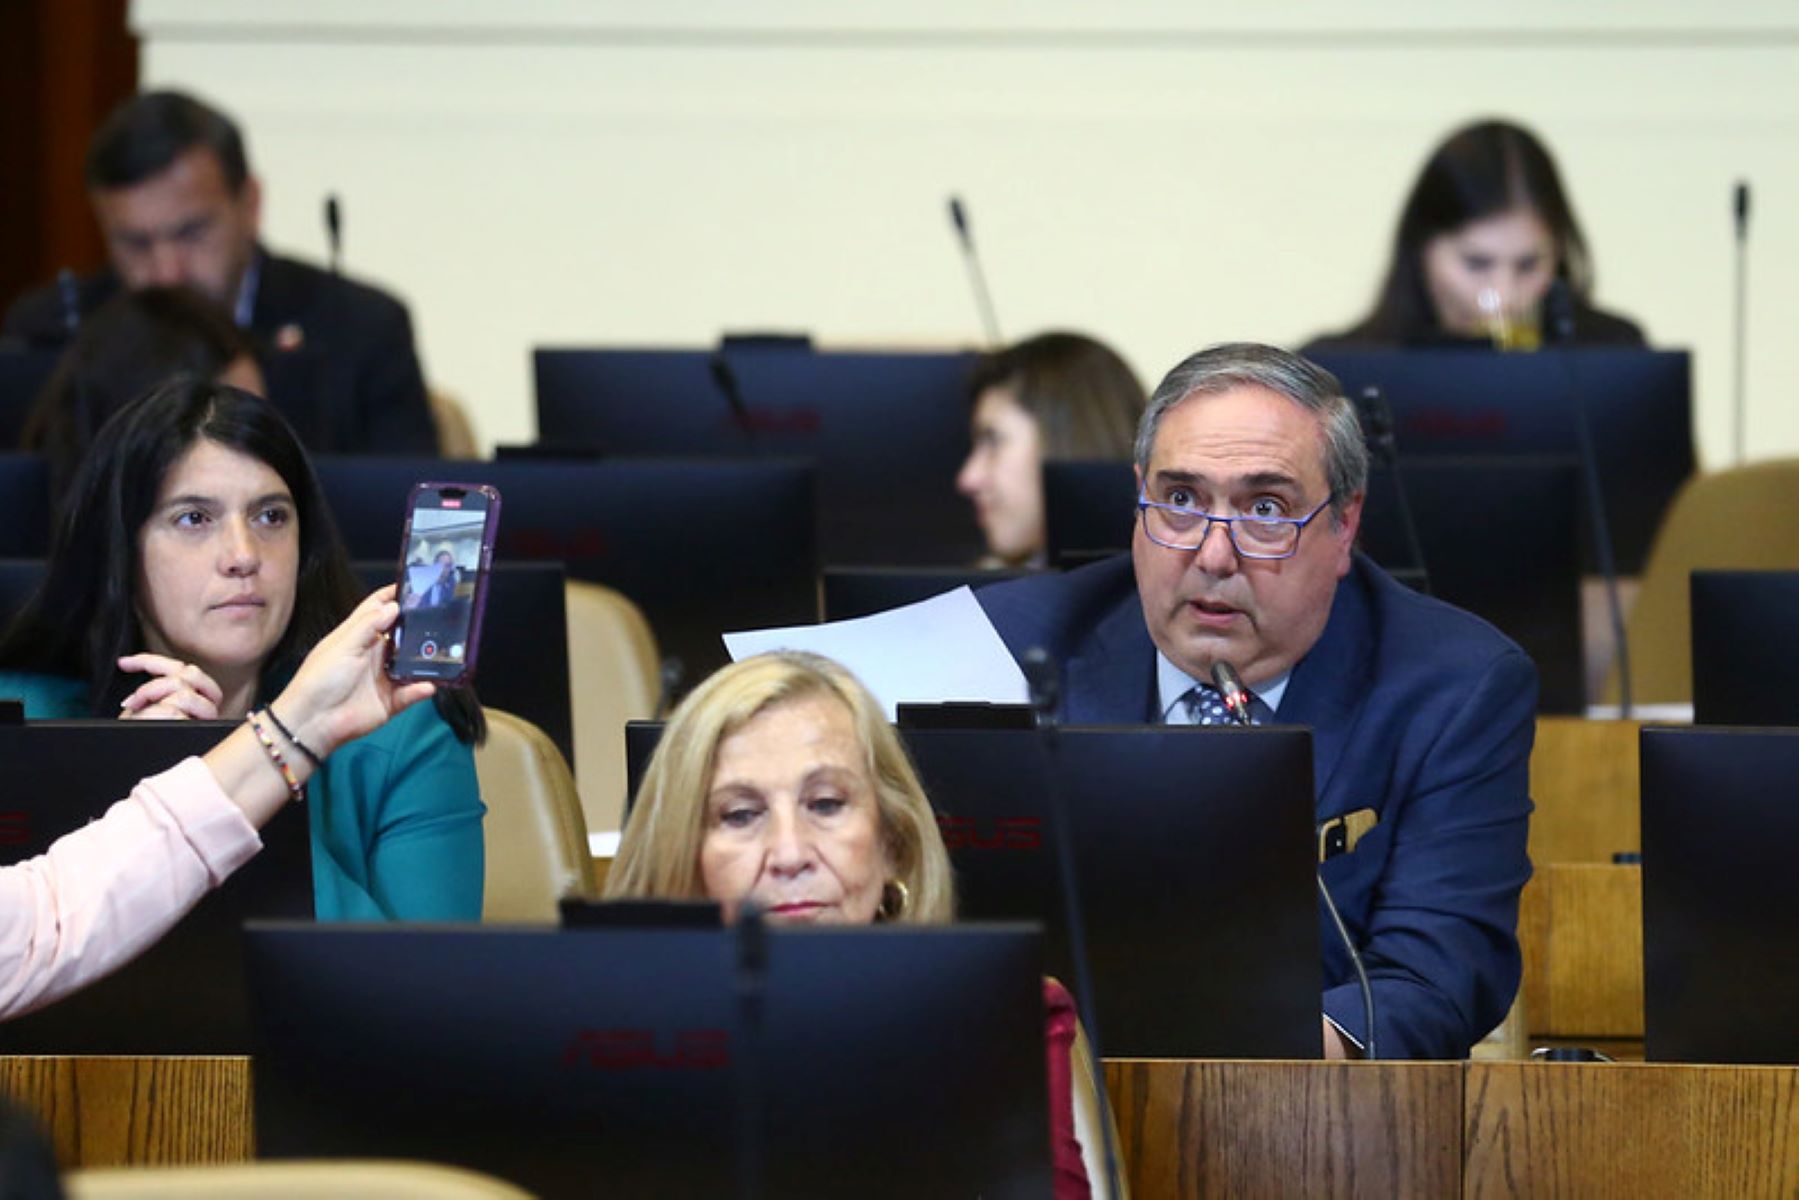 Diputado por Magallanes Carlos Bianchi junto a otros parlamentarios, proponen implementar “Bono Costo Cero” en consultas telemáticas para afiliados FONASA